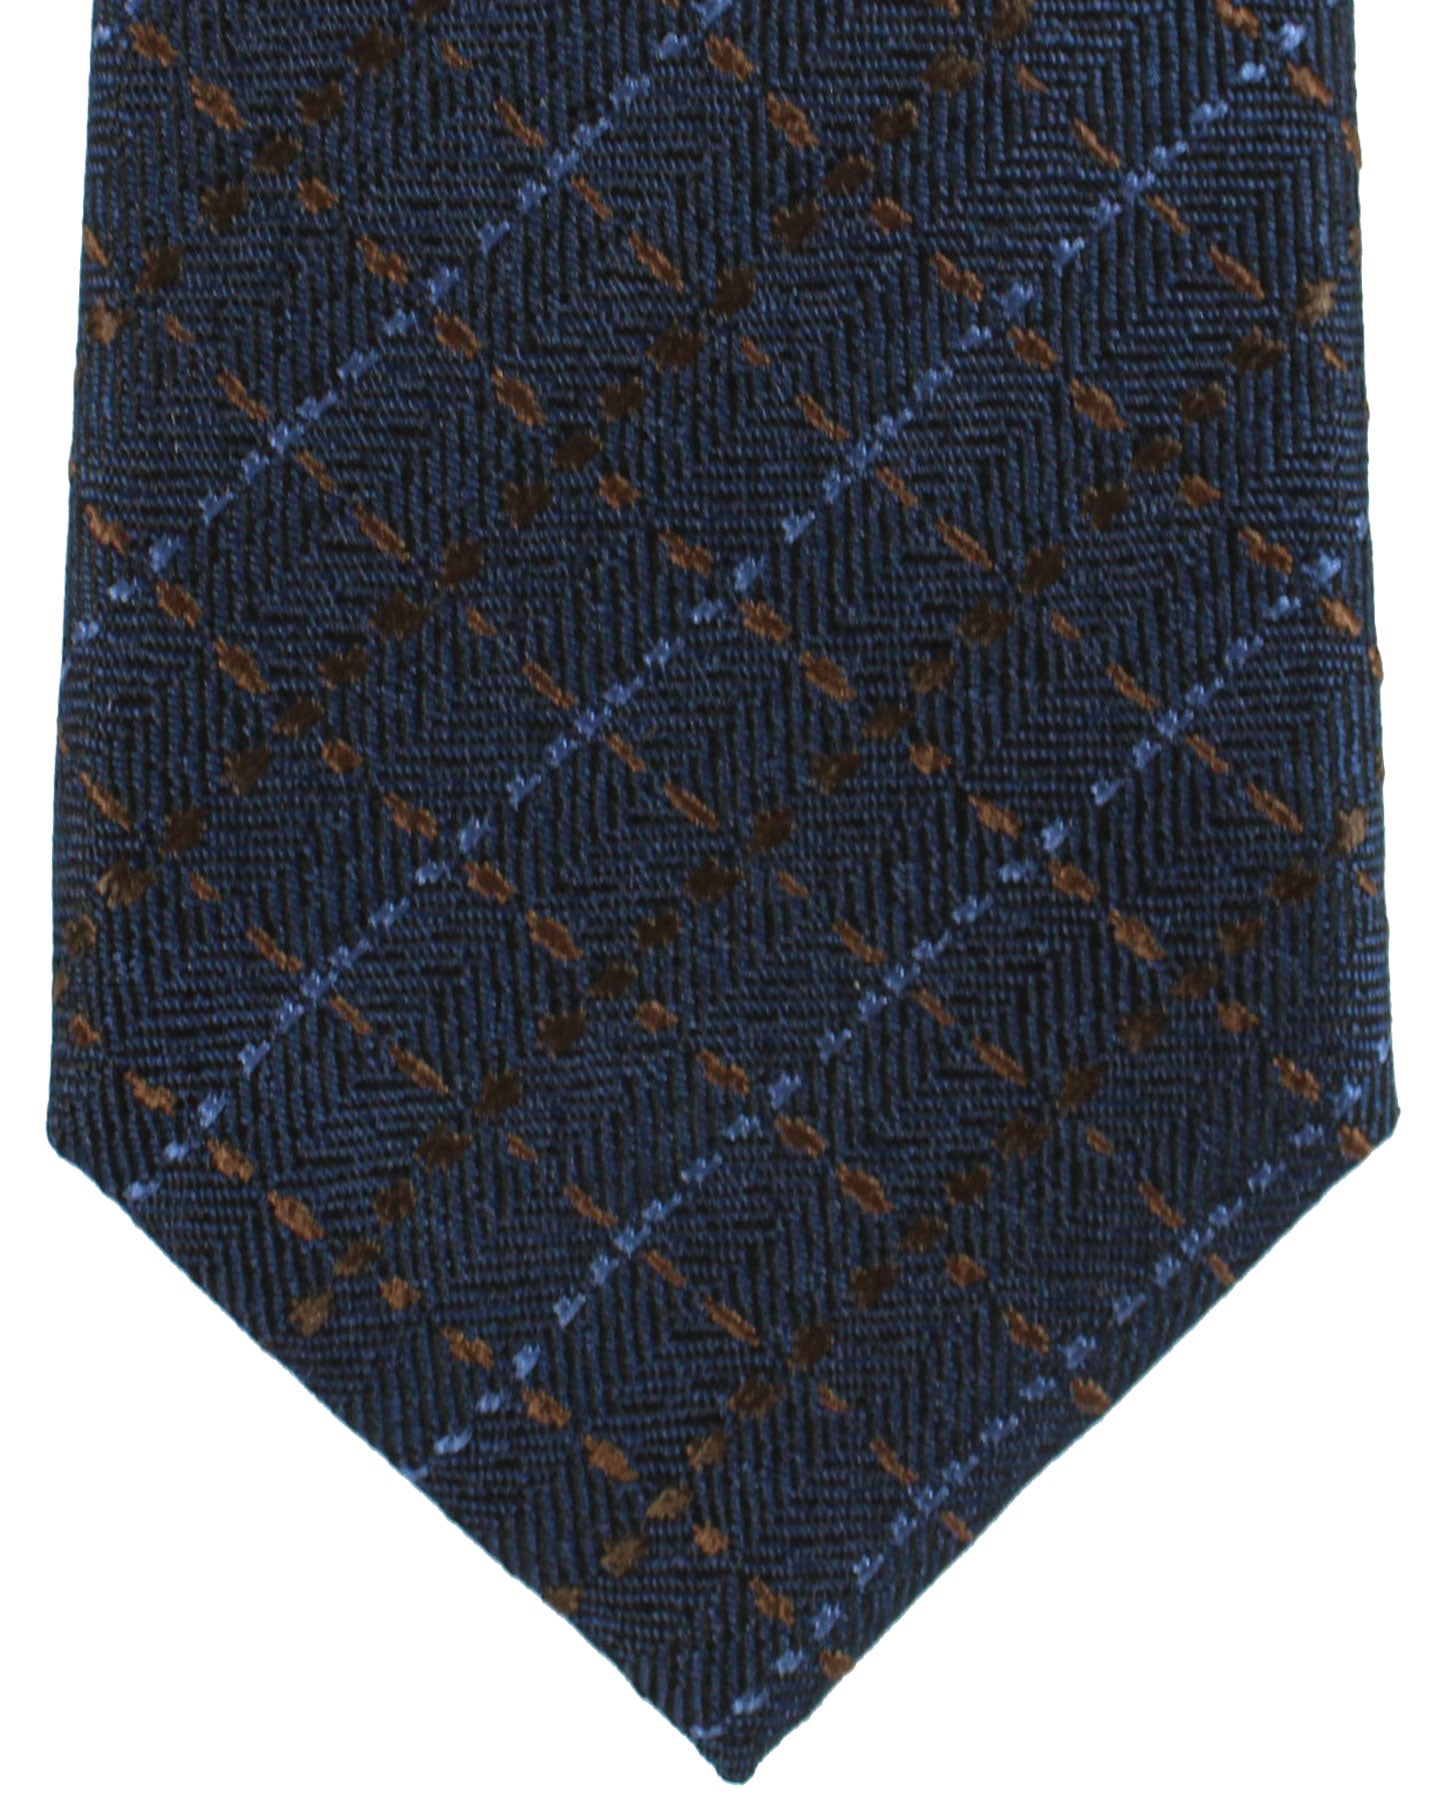 Canali Silk Tie Dark Blue Brown Plaid Pattern